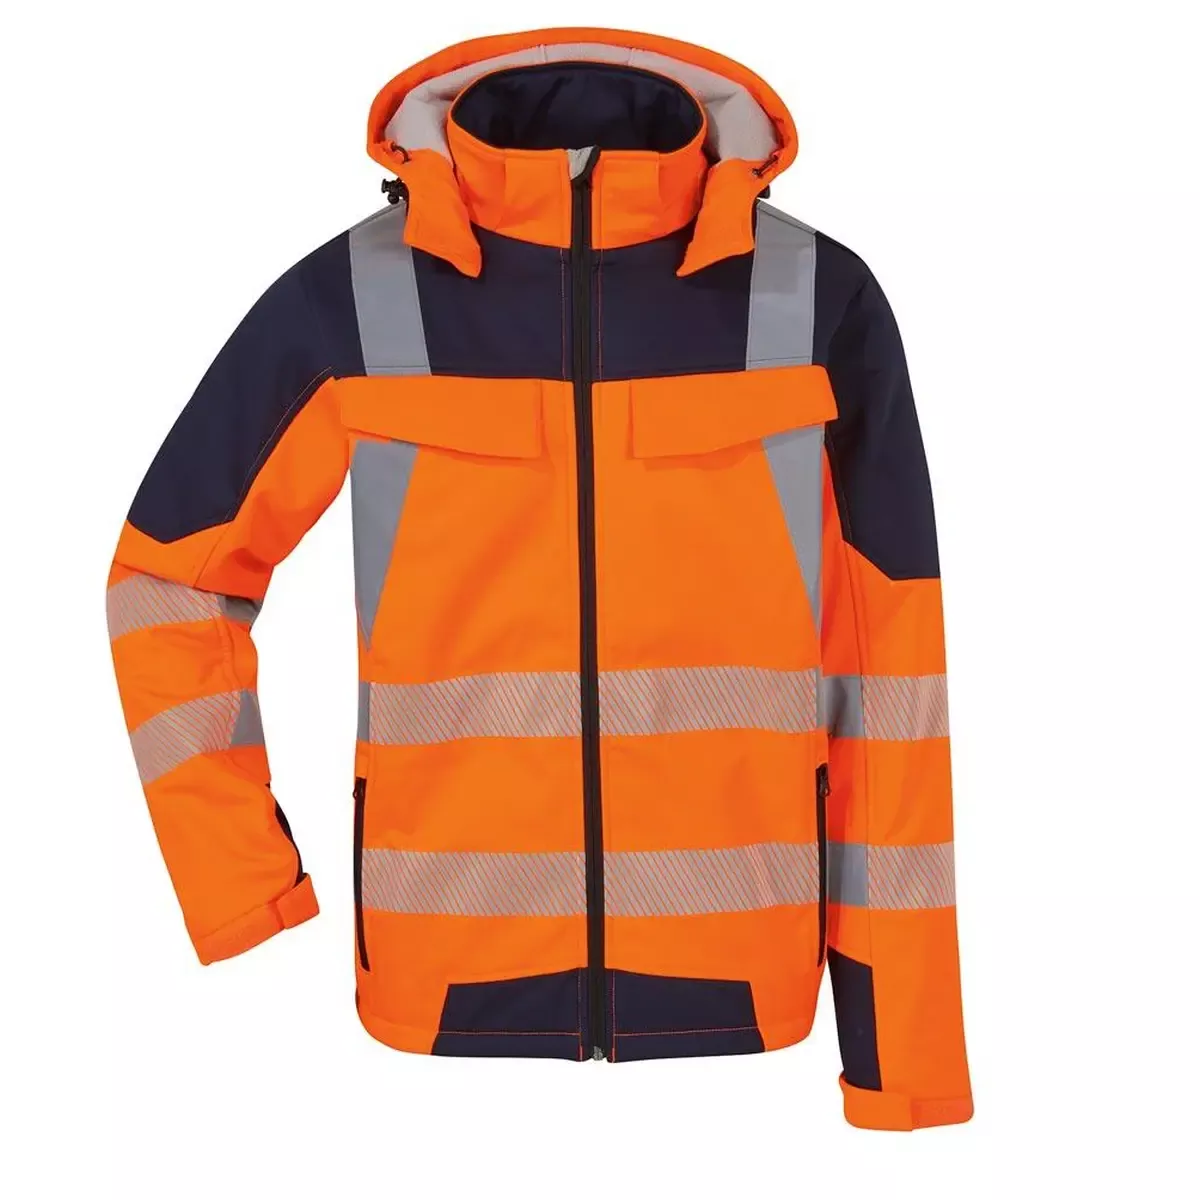 Warnschutz-Softshell-Jacke, Farbe leuchtorange/marine, Gr. 2XL Extrem dehnbar und atmungsaktiv